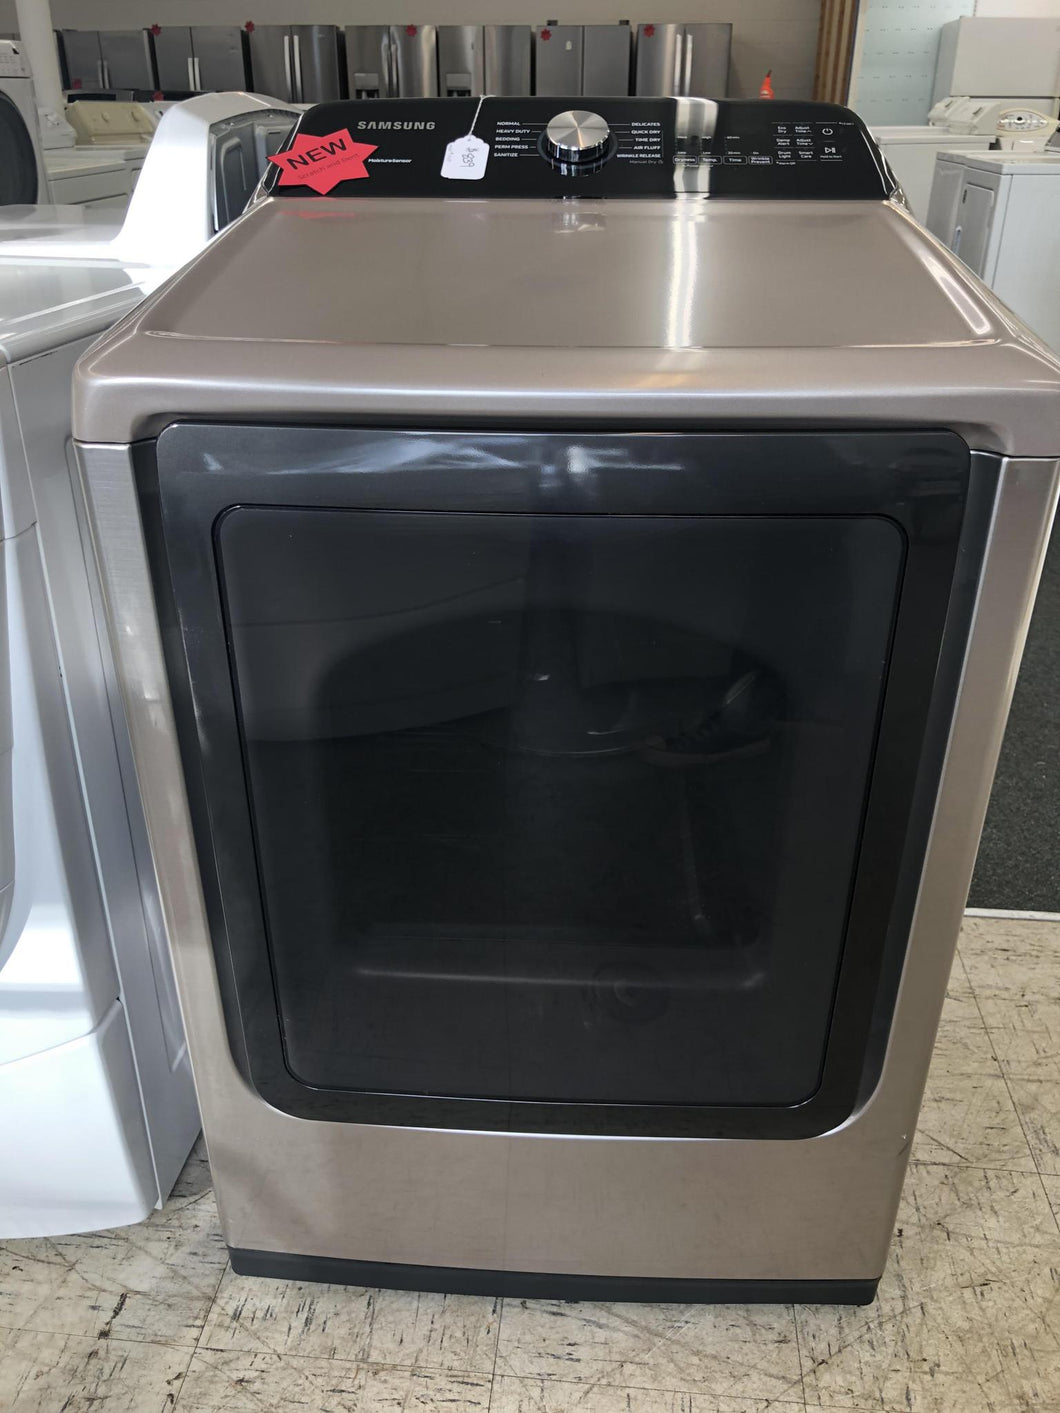 NEW Samsung Gas Dryer - 3267